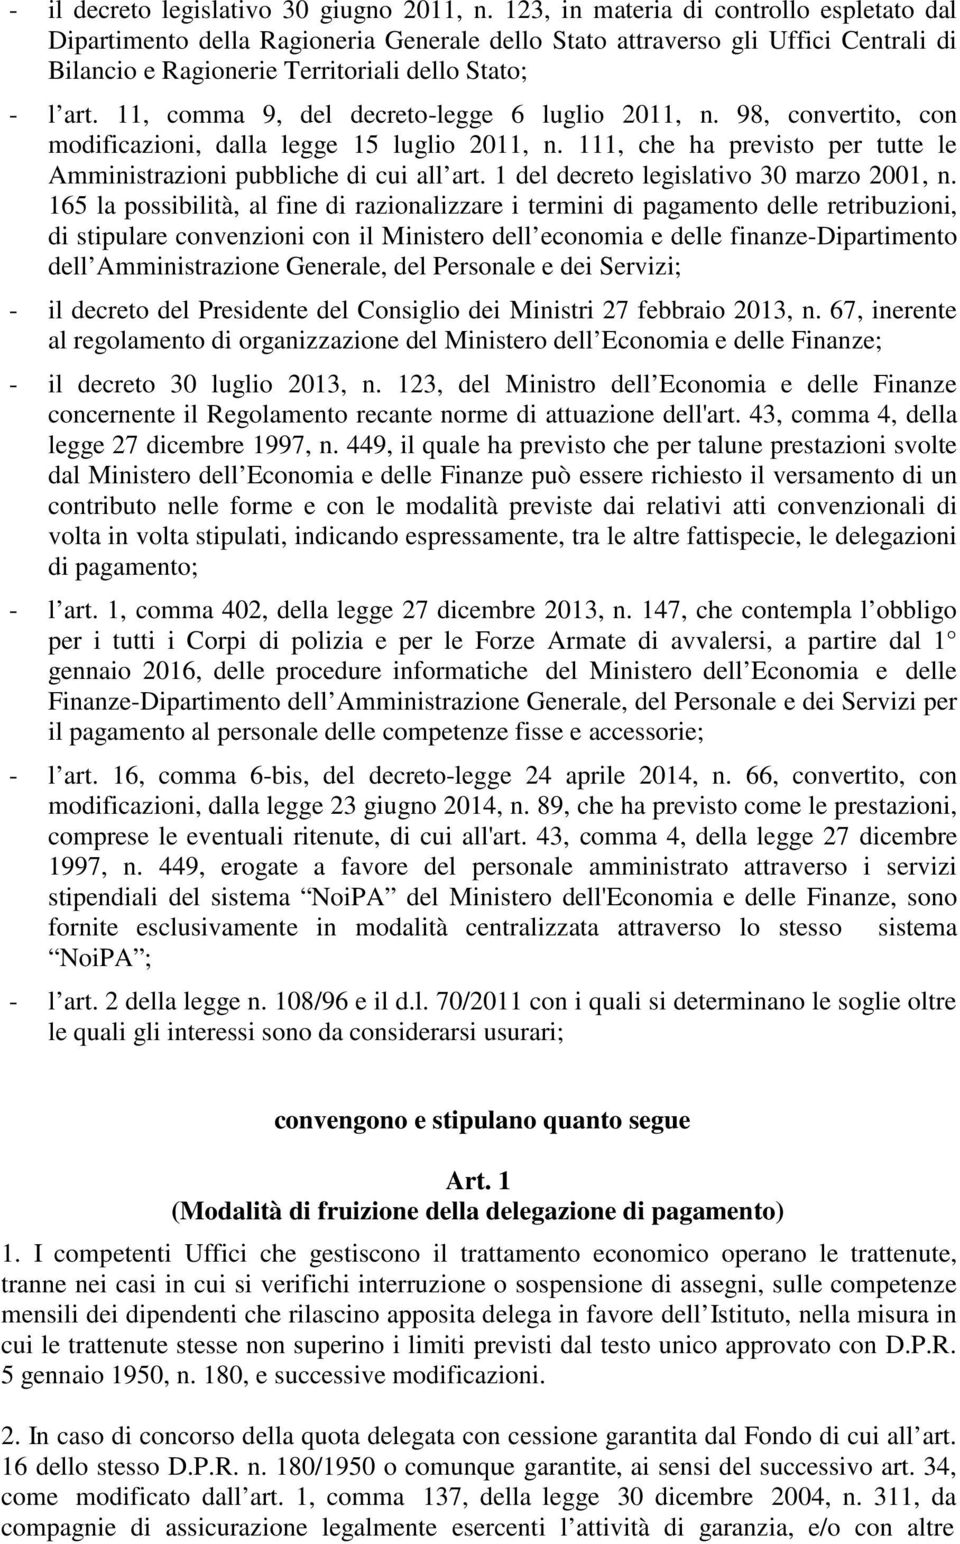 11, comma 9, del decreto-legge 6 luglio 2011, n. 98, convertito, con modificazioni, dalla legge 15 luglio 2011, n. 111, che ha previsto per tutte le Amministrazioni pubbliche di cui all art.